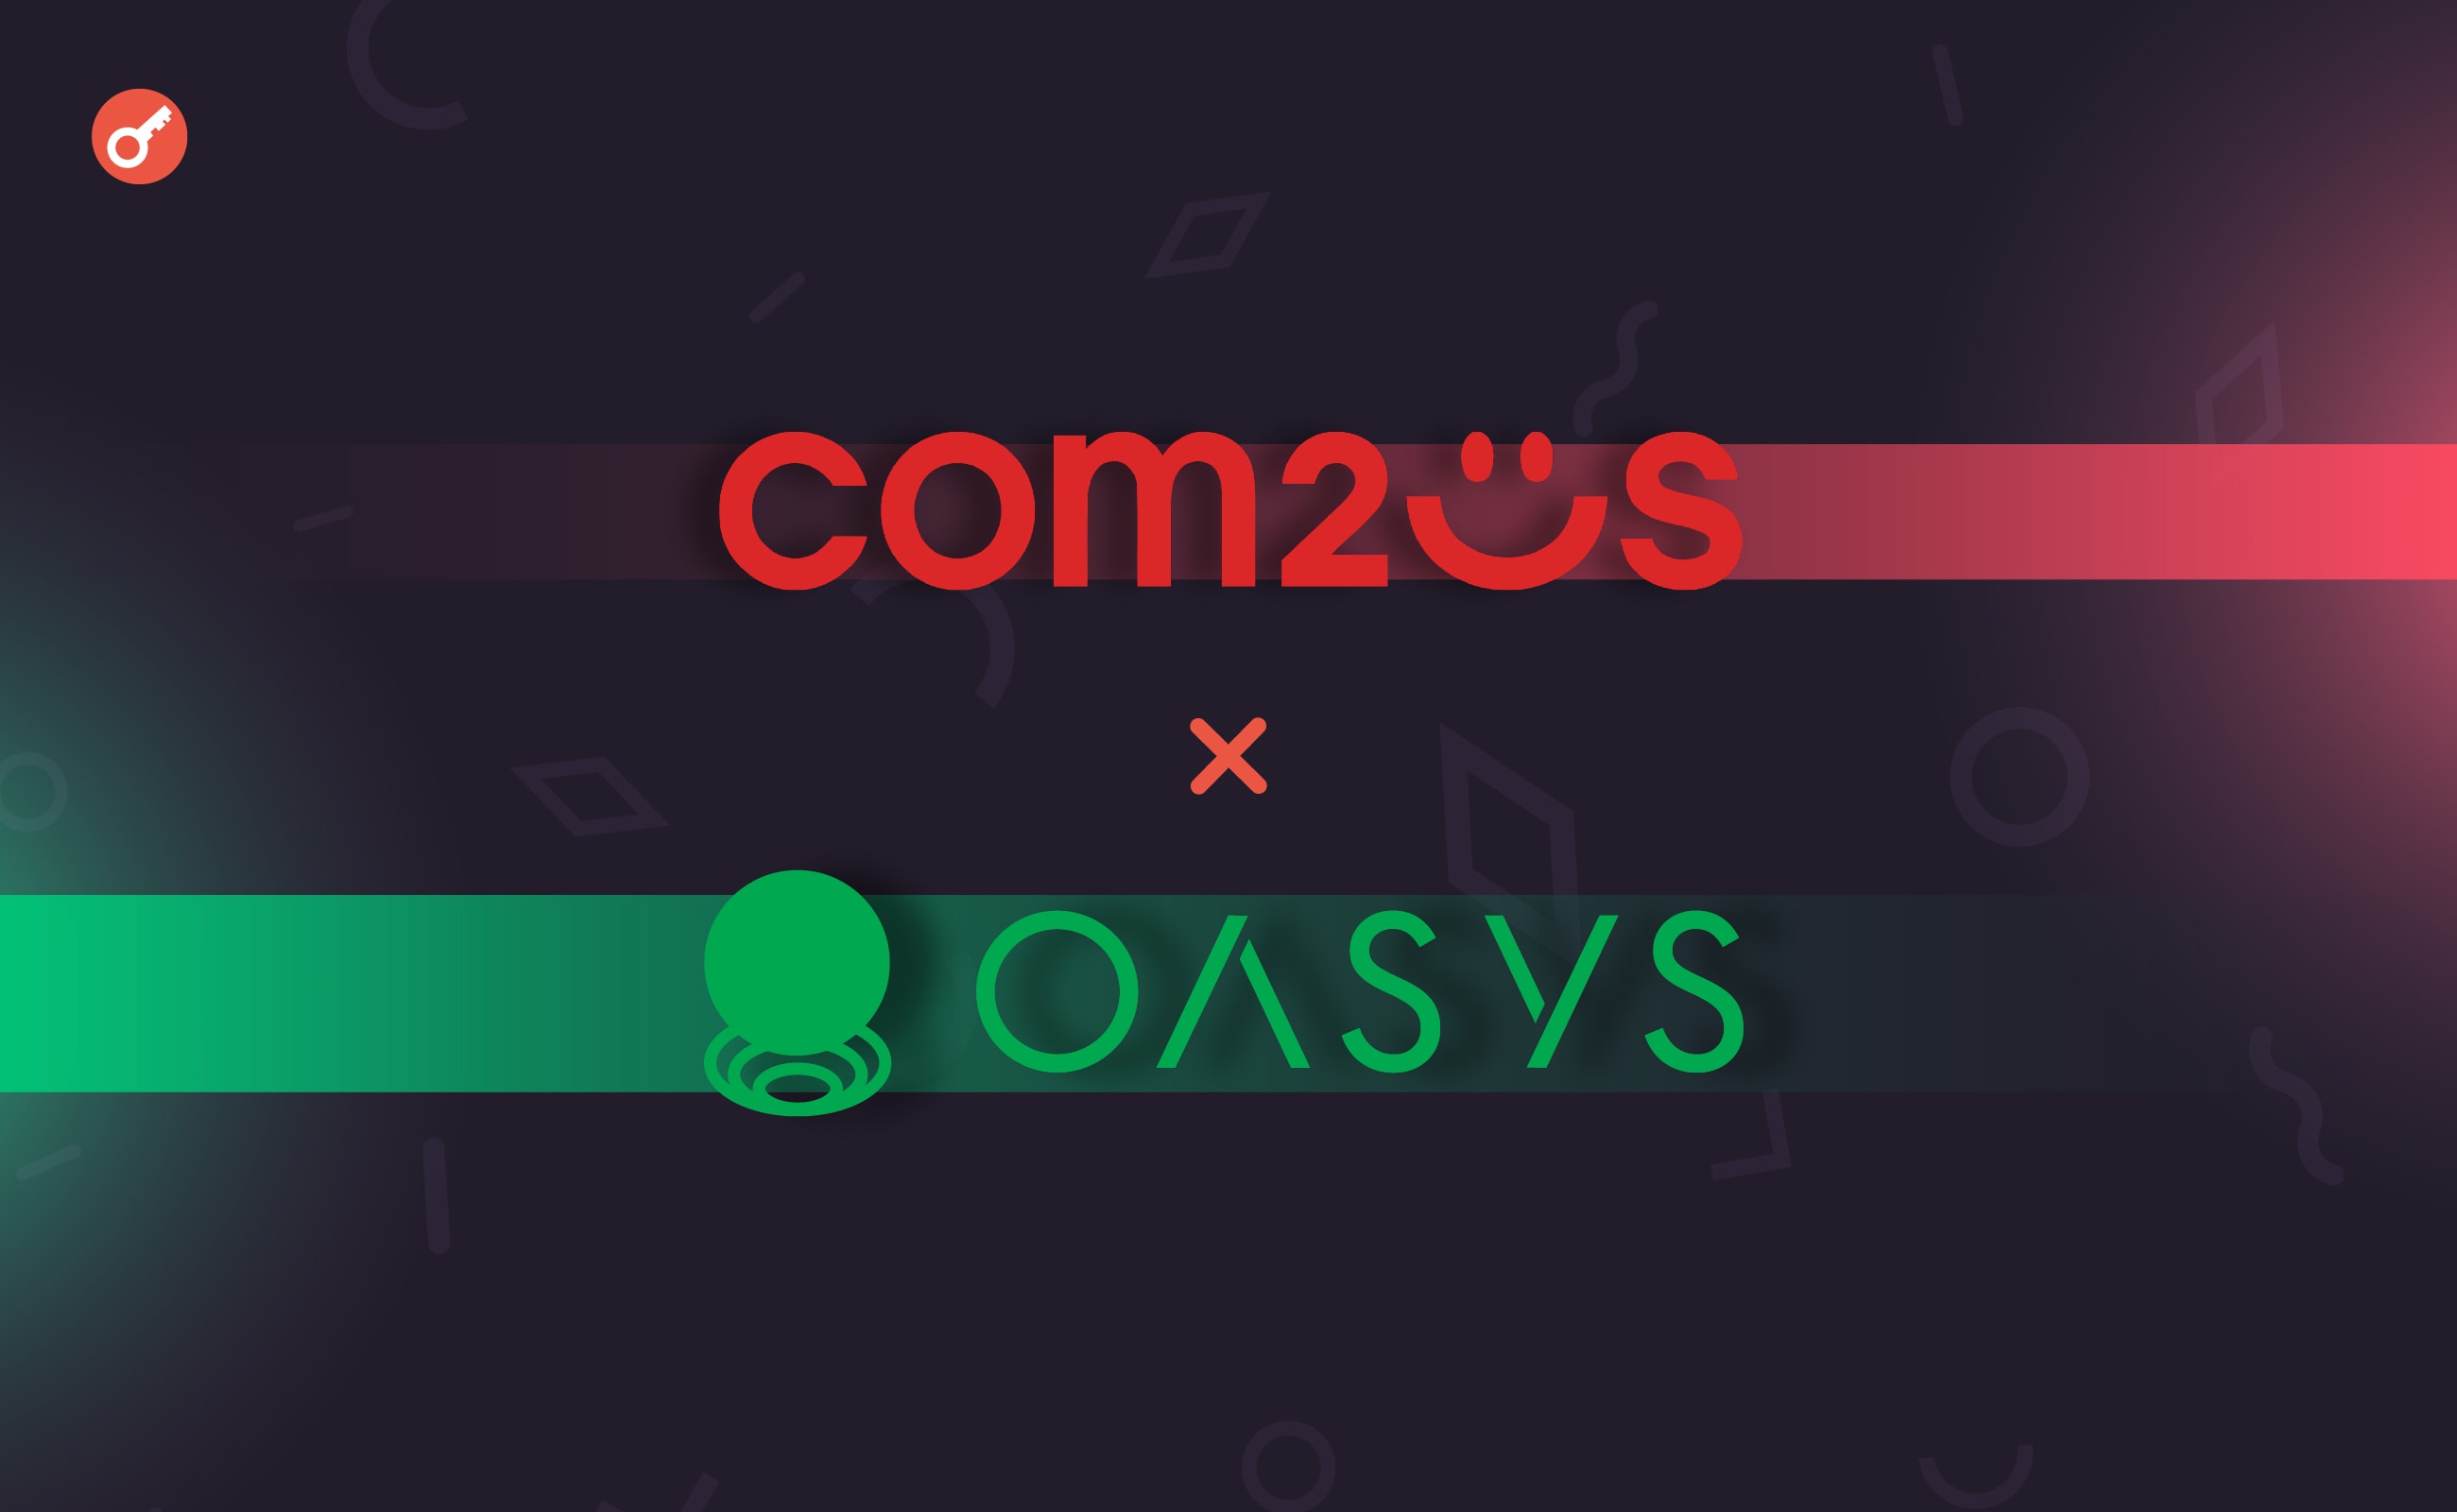 Ігрова студія Com2uS оголосила про партнерство з платформою Oasys. Головний колаж новини.